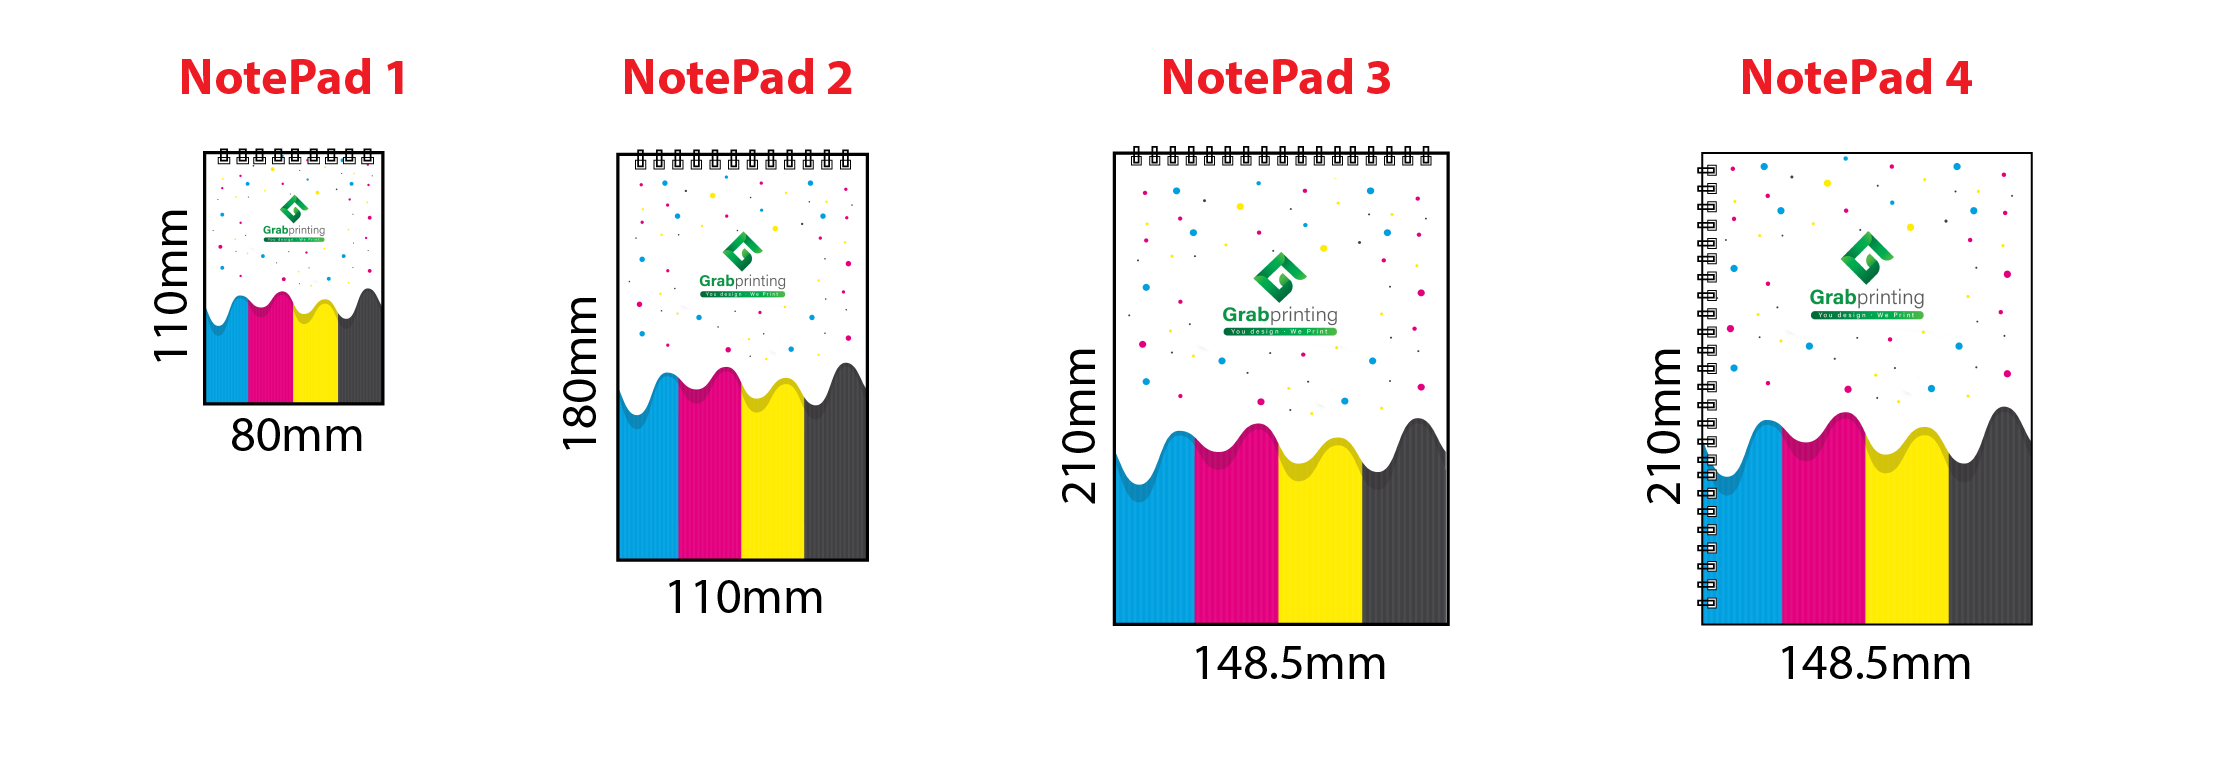 notepad NotePad Notepad models